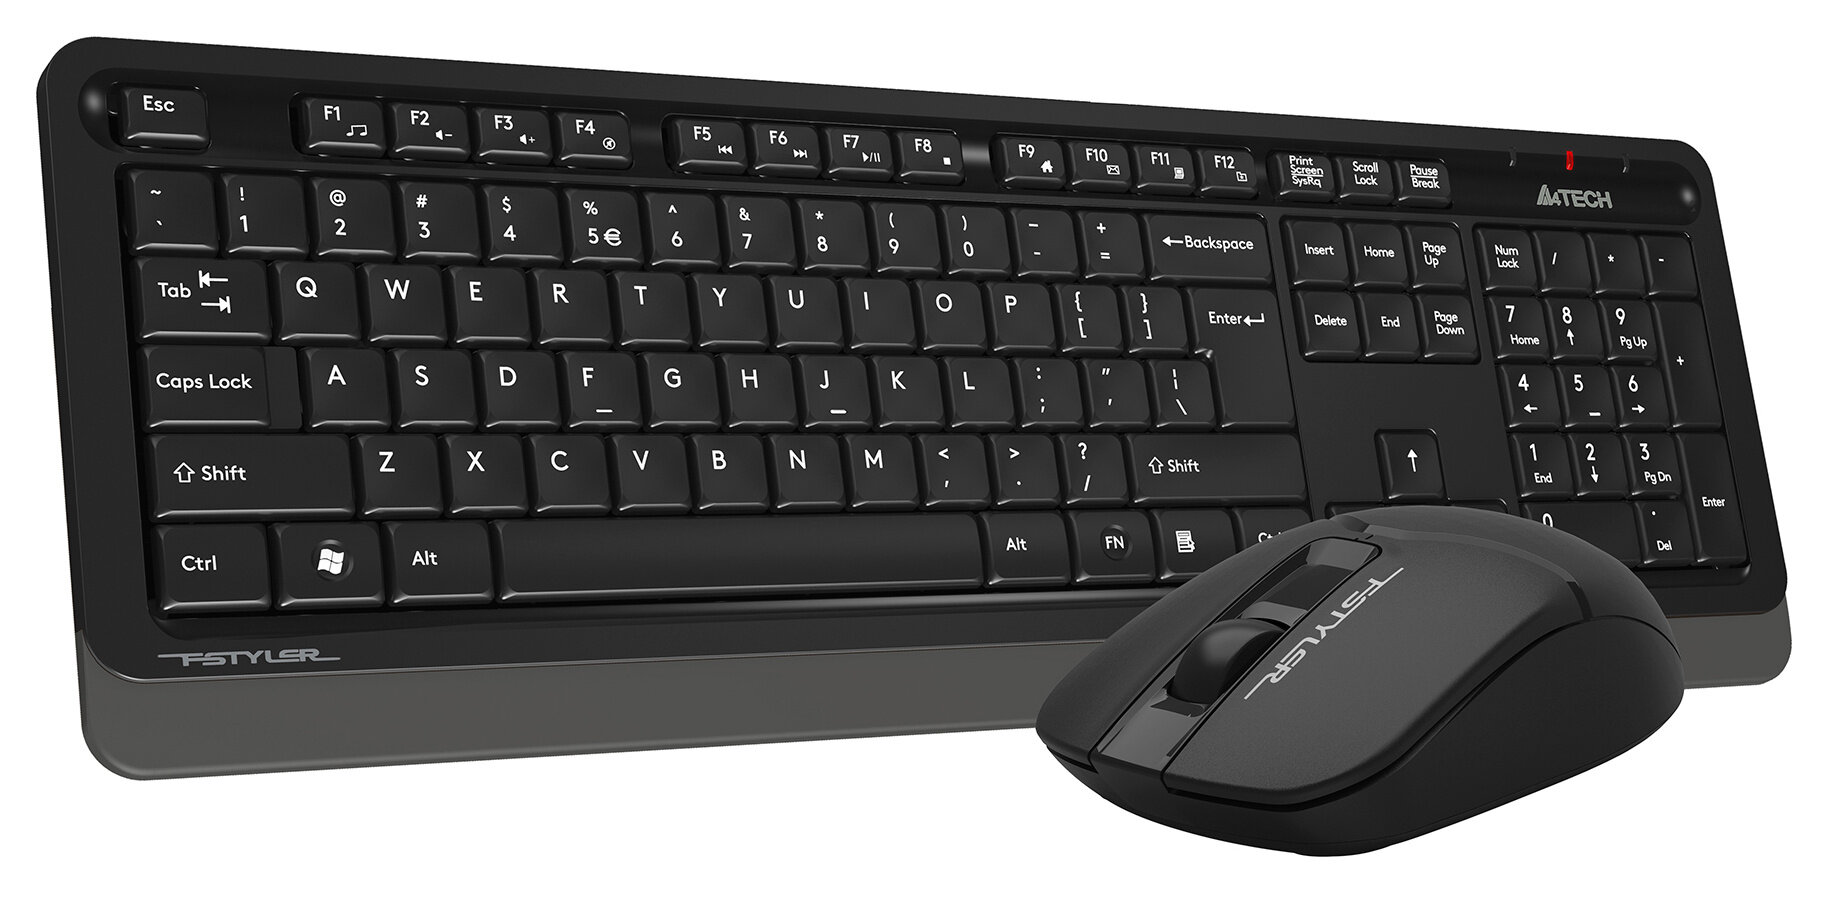 Клавиатура + мышь A4Tech Fstyler FG1012 клав:черный/серый мышь:черный USB беспроводная Multimedia